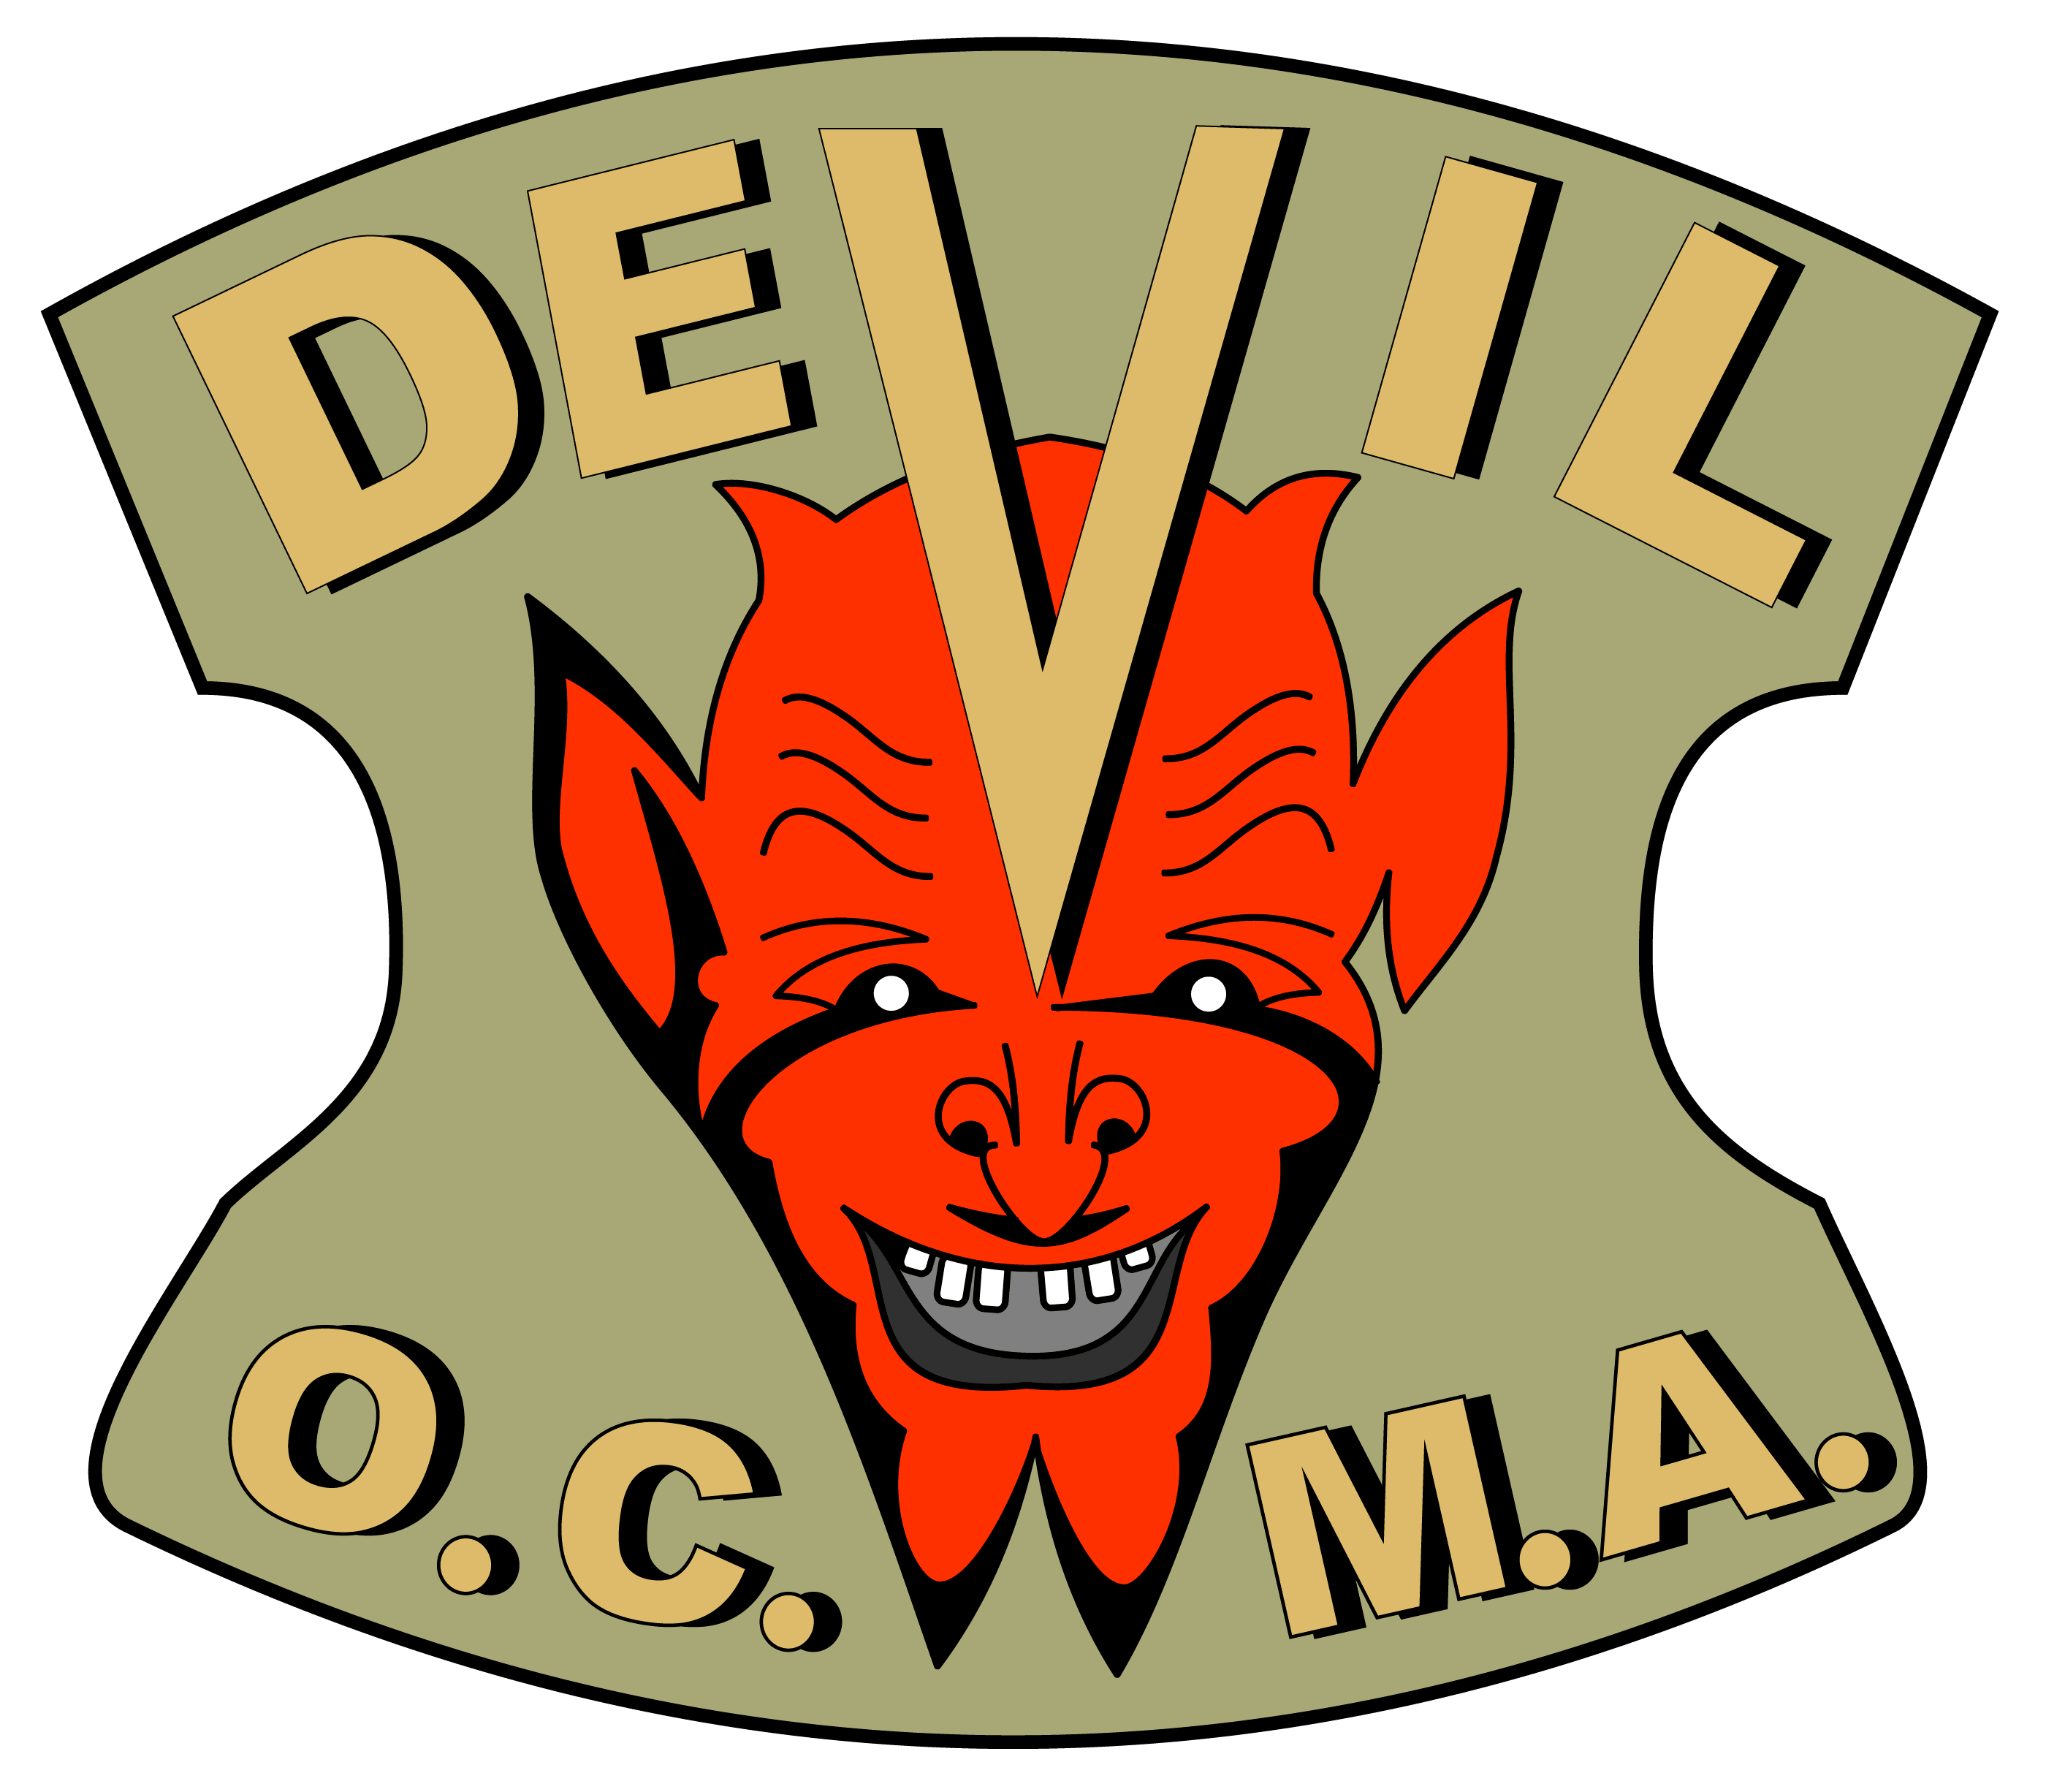 Devil logo Royalty Free Vector Image - VectorStock